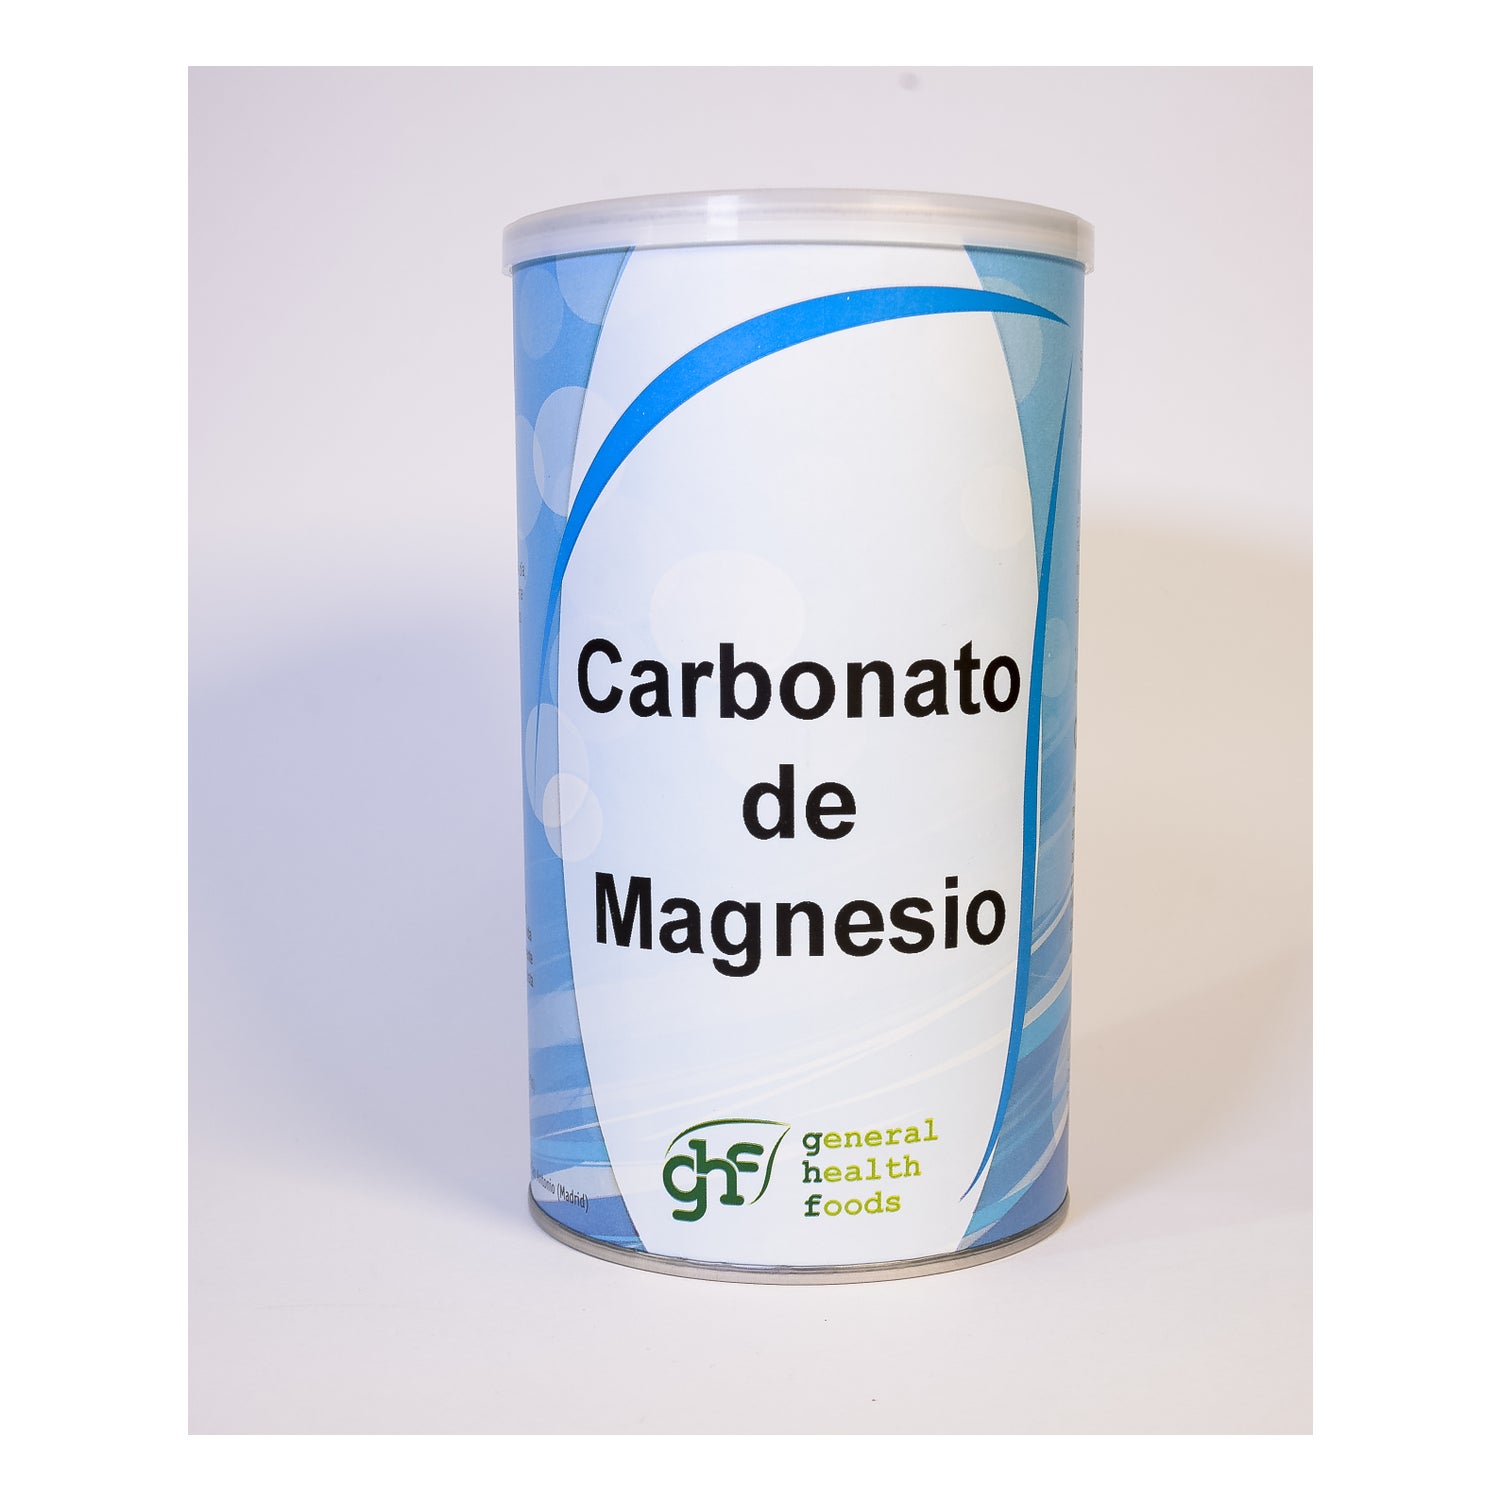 Carbonato De Magnesio 180Gr. de Ghf